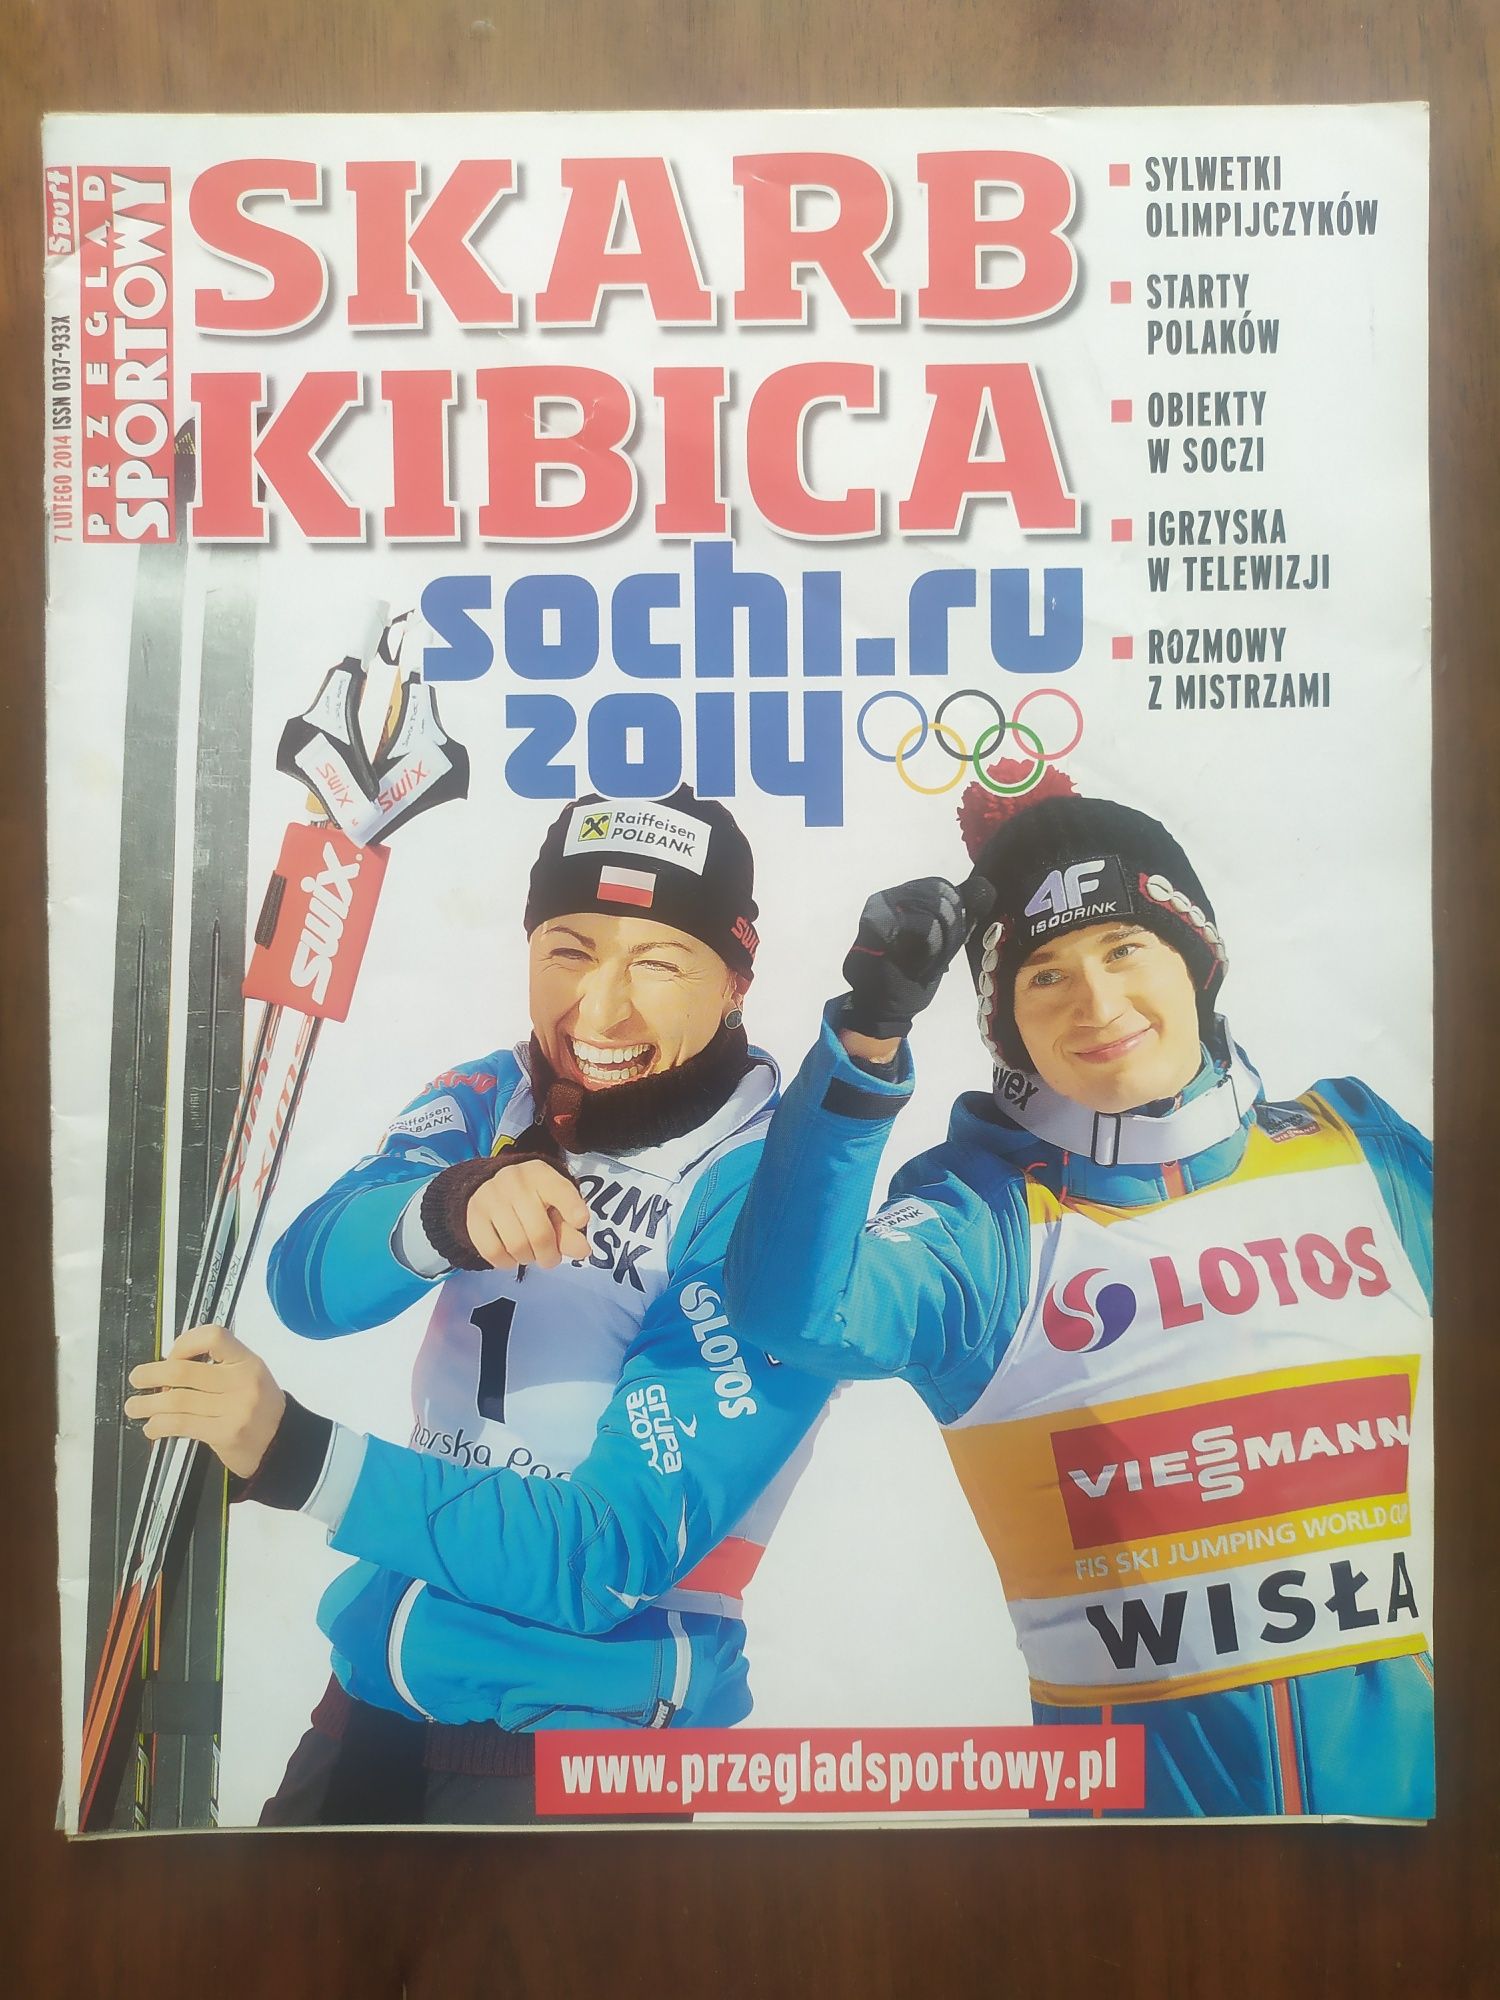 Skarb kibica igrzyska olimpijskie Sochi 2014